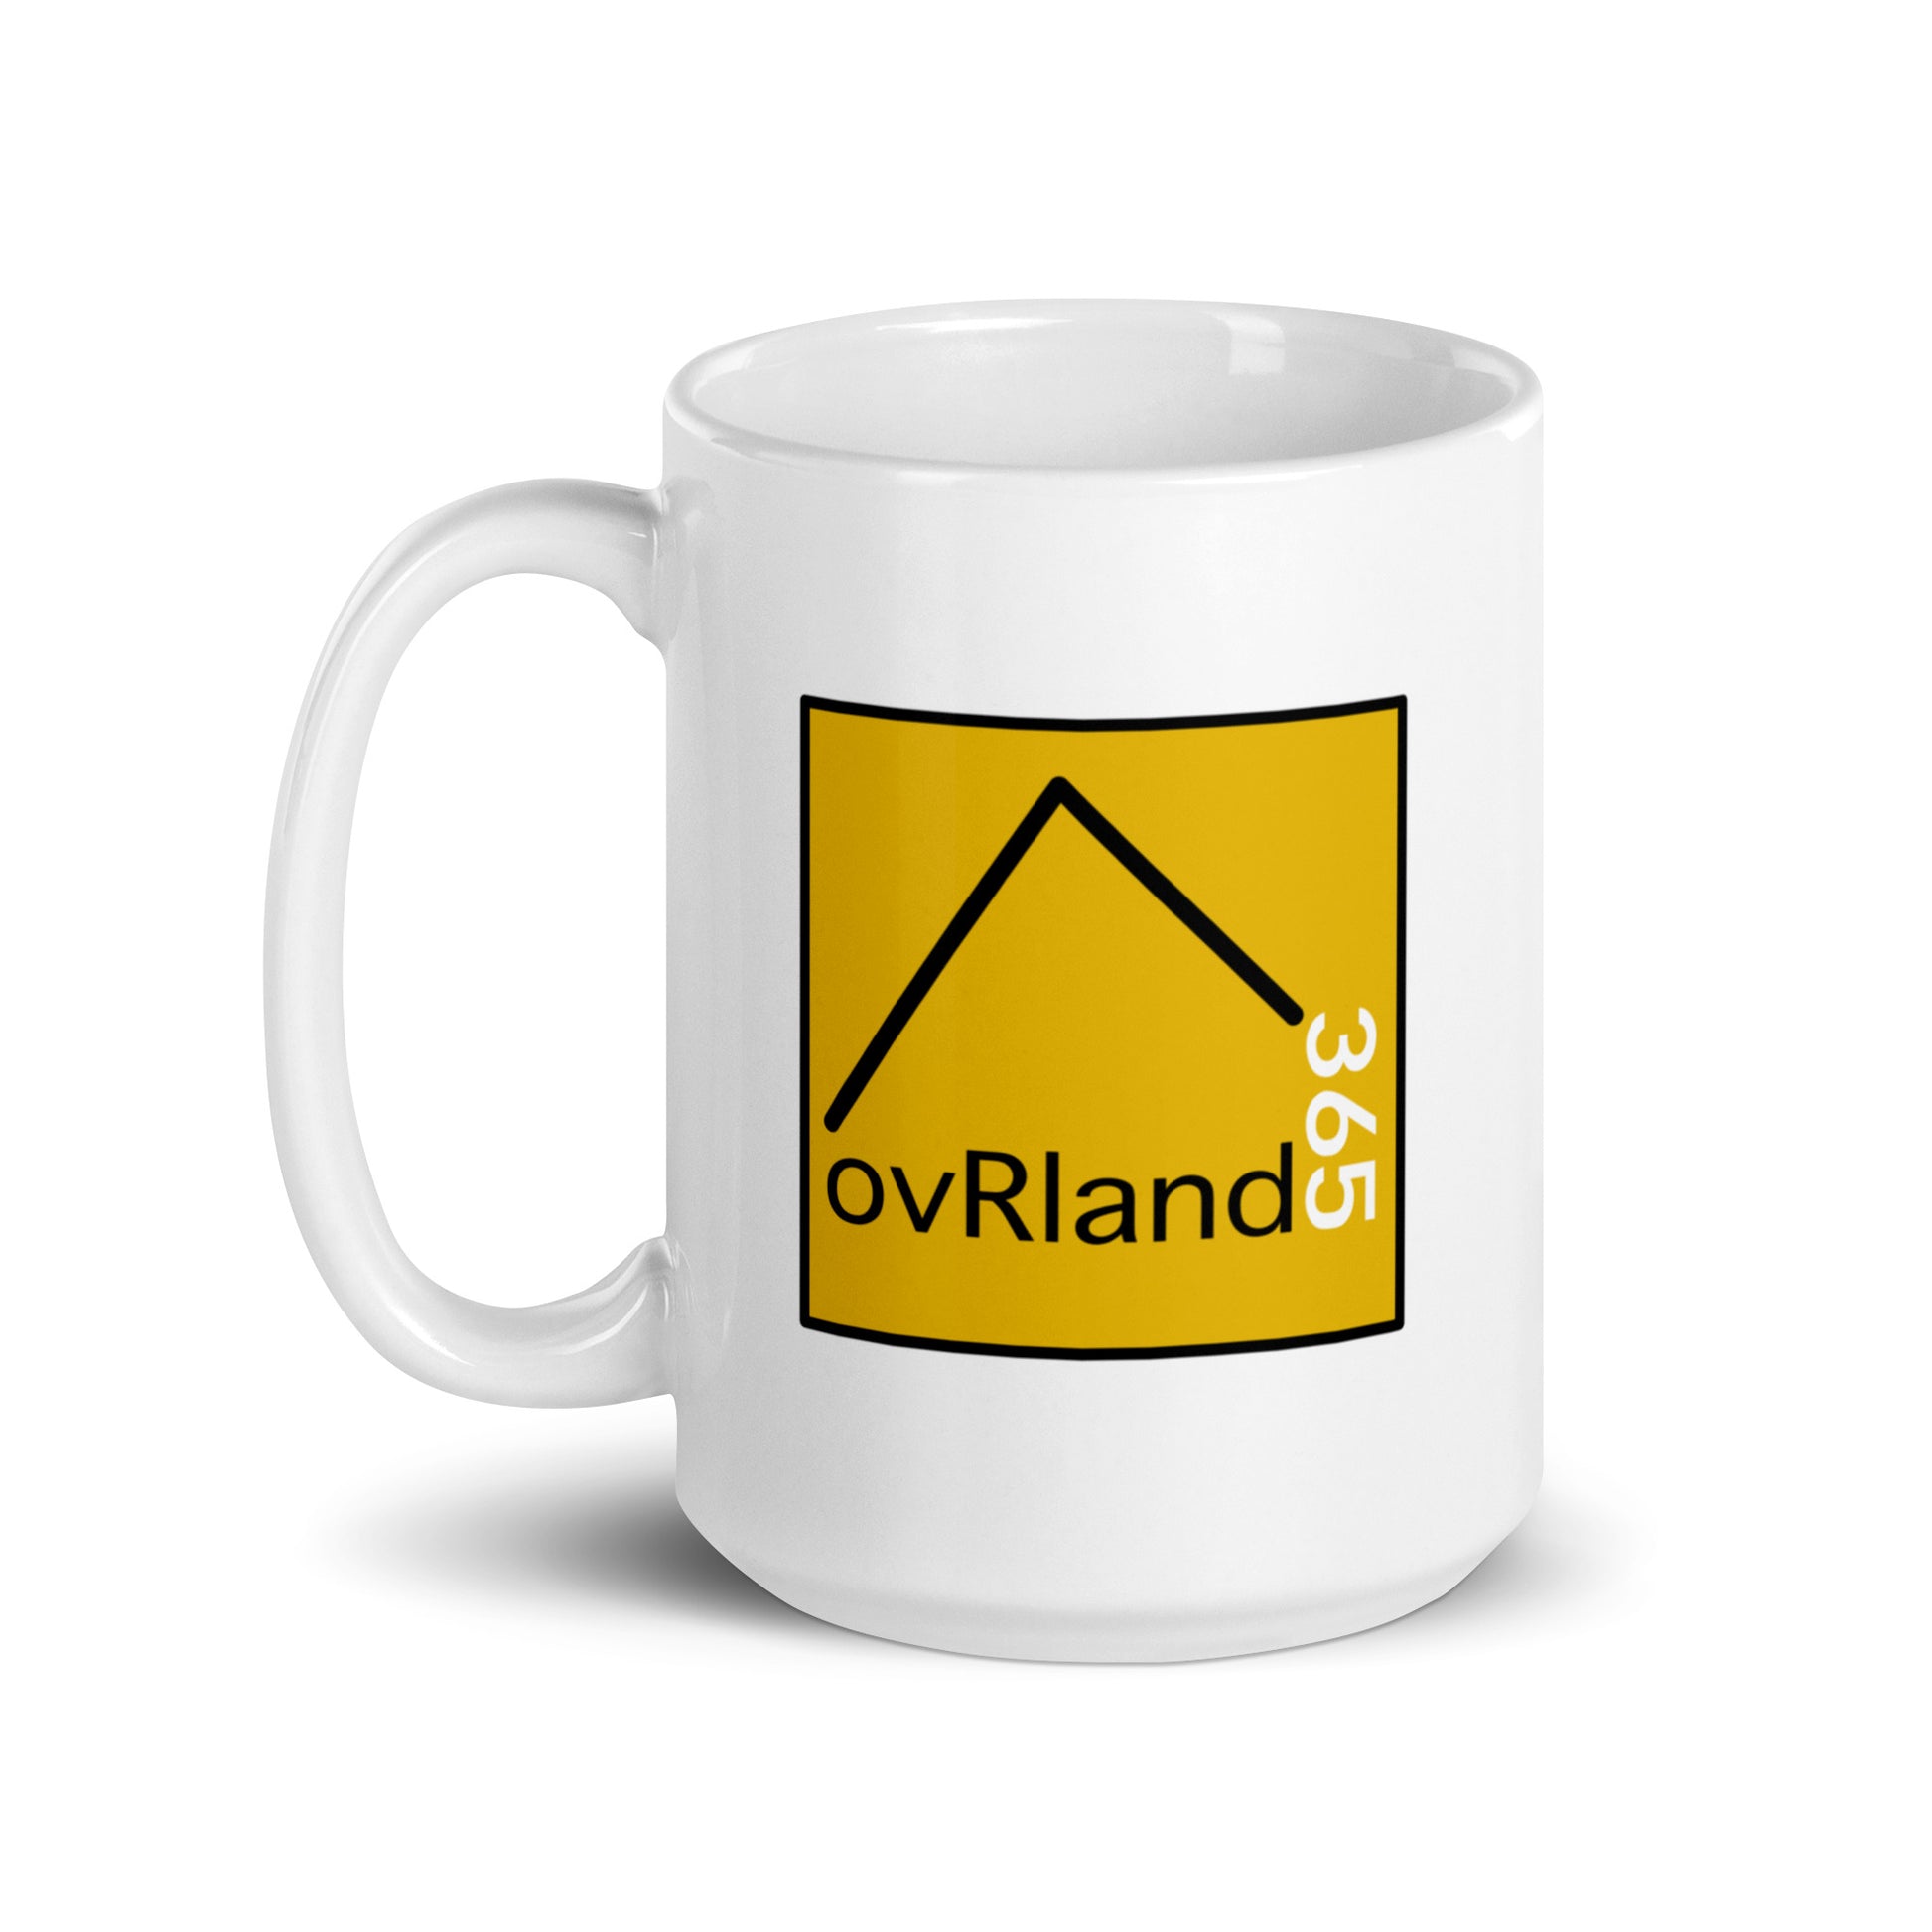 OVER LAND 365 Pixel 15oz coffee mug. ovRland365 logo side. overland365.com